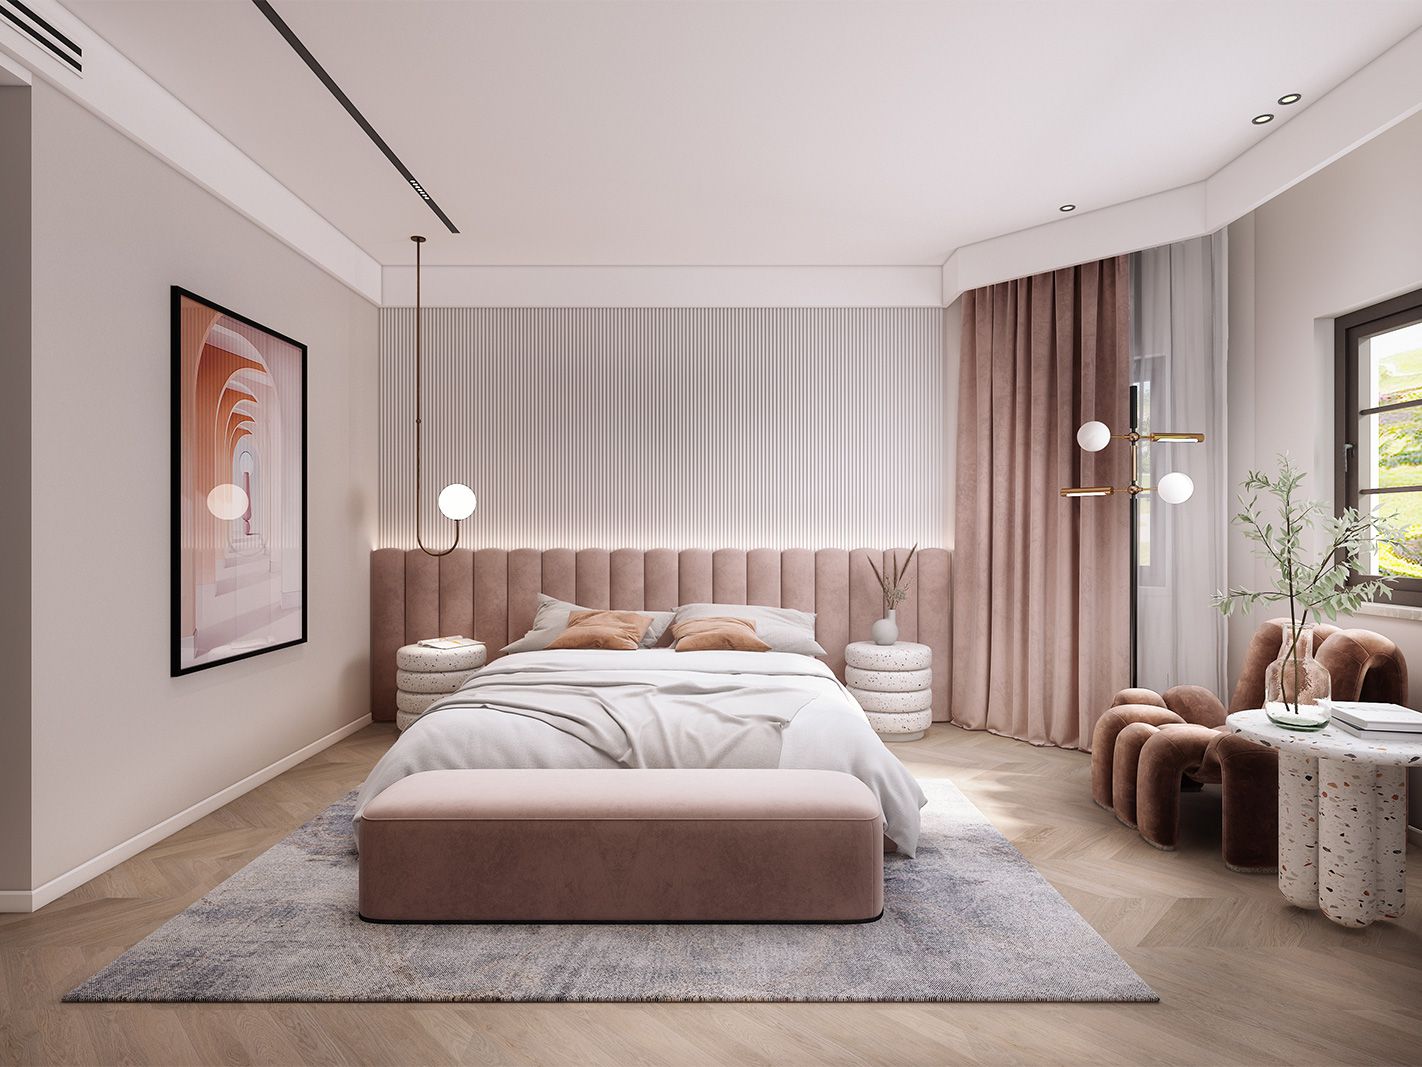 嘉定区安亭高尔夫600平现代风格独栋别墅卧室装修效果图